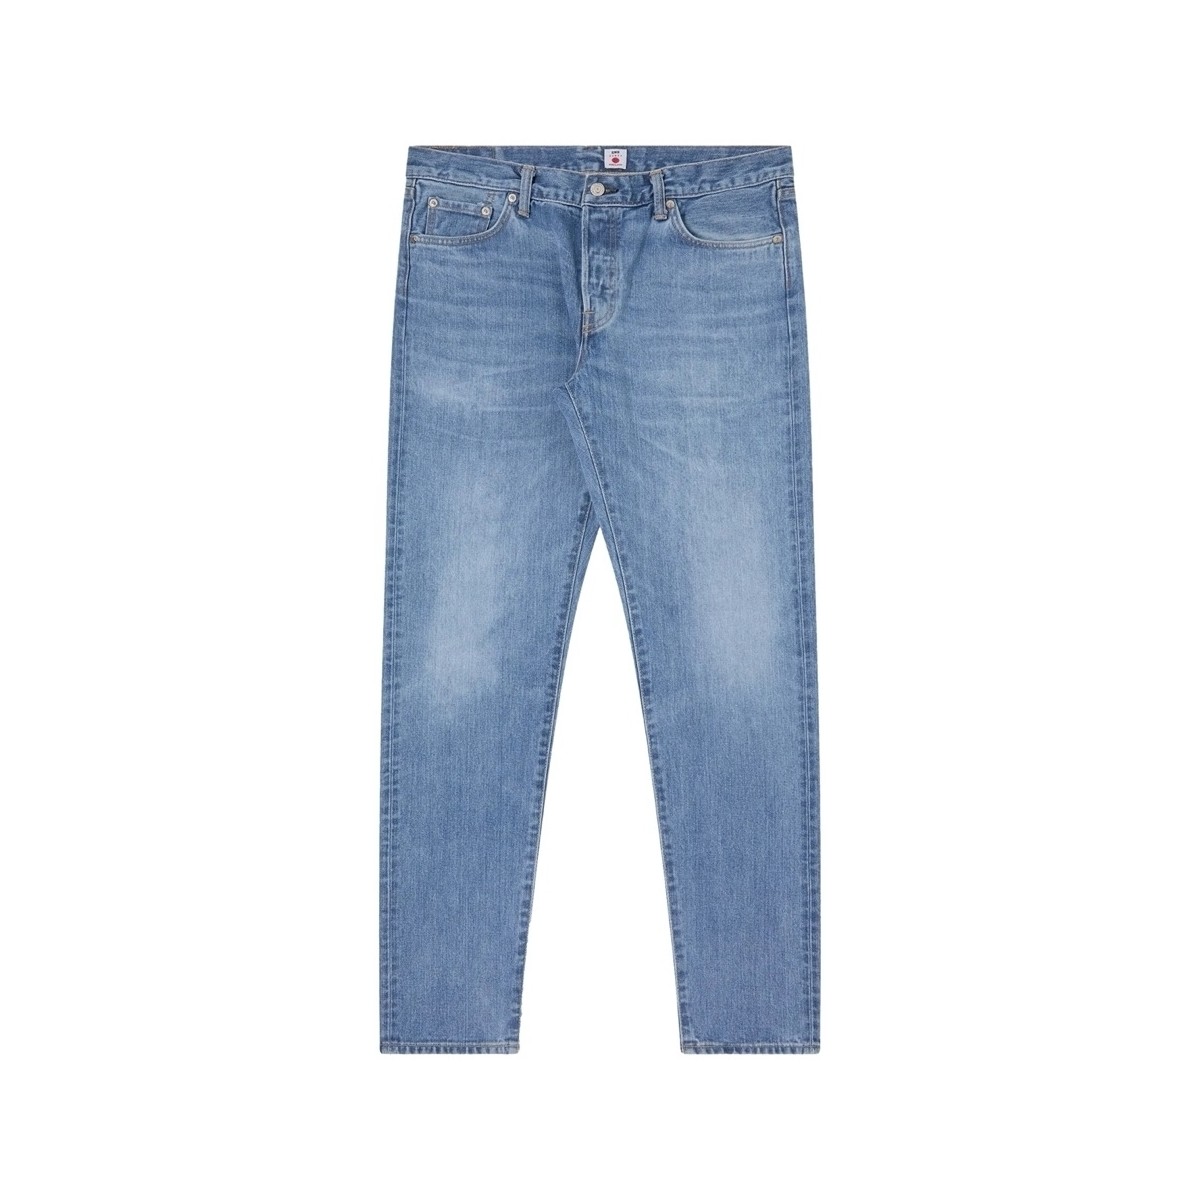 Παντελόνια Edwin Regular Tapered Jeans - Blue Light Used